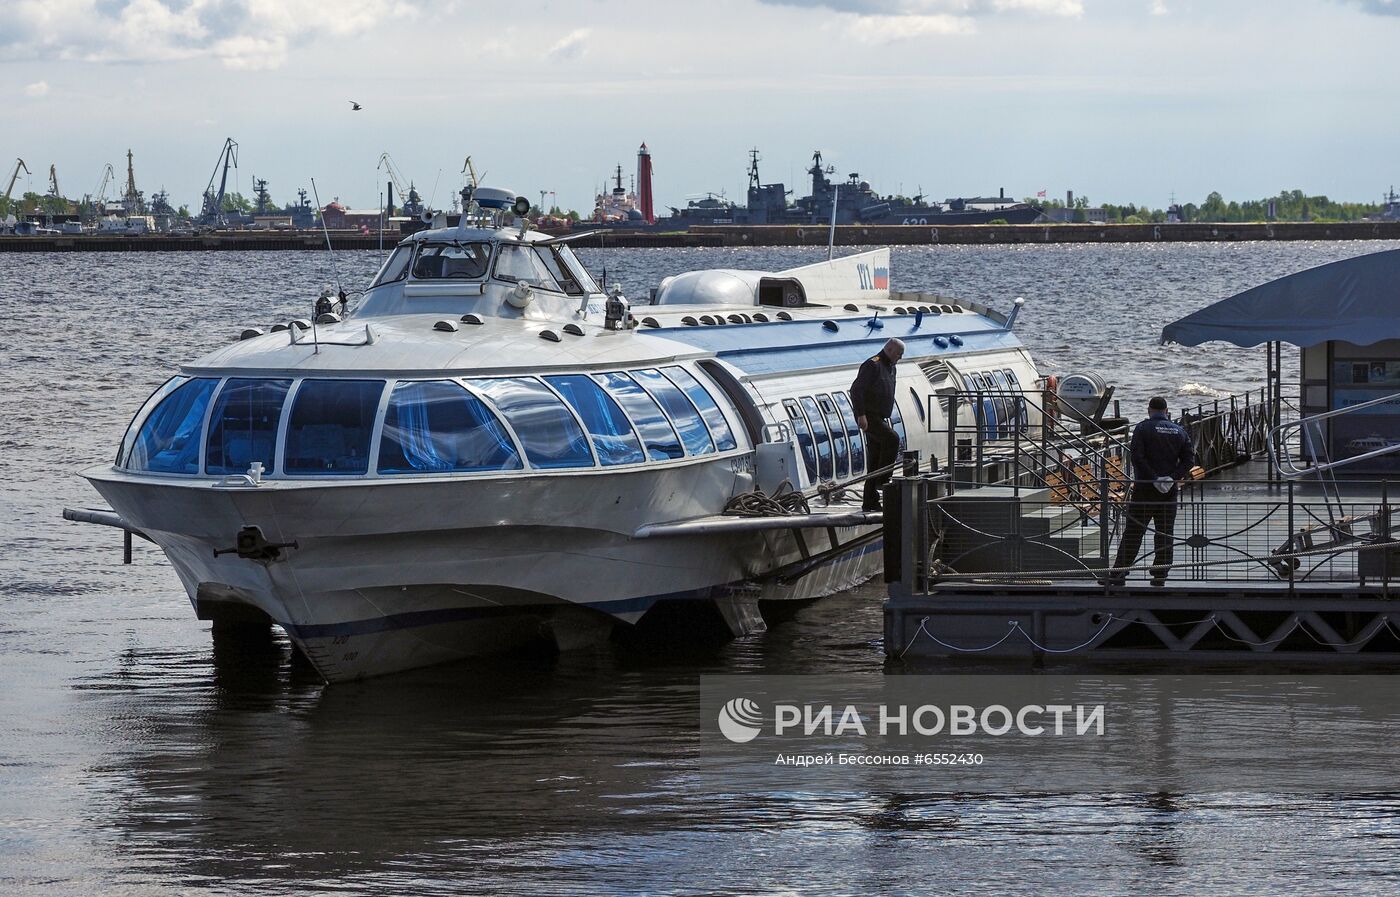 Открытие водного сообщения между "Островом фортов" и Санкт-Петербургом